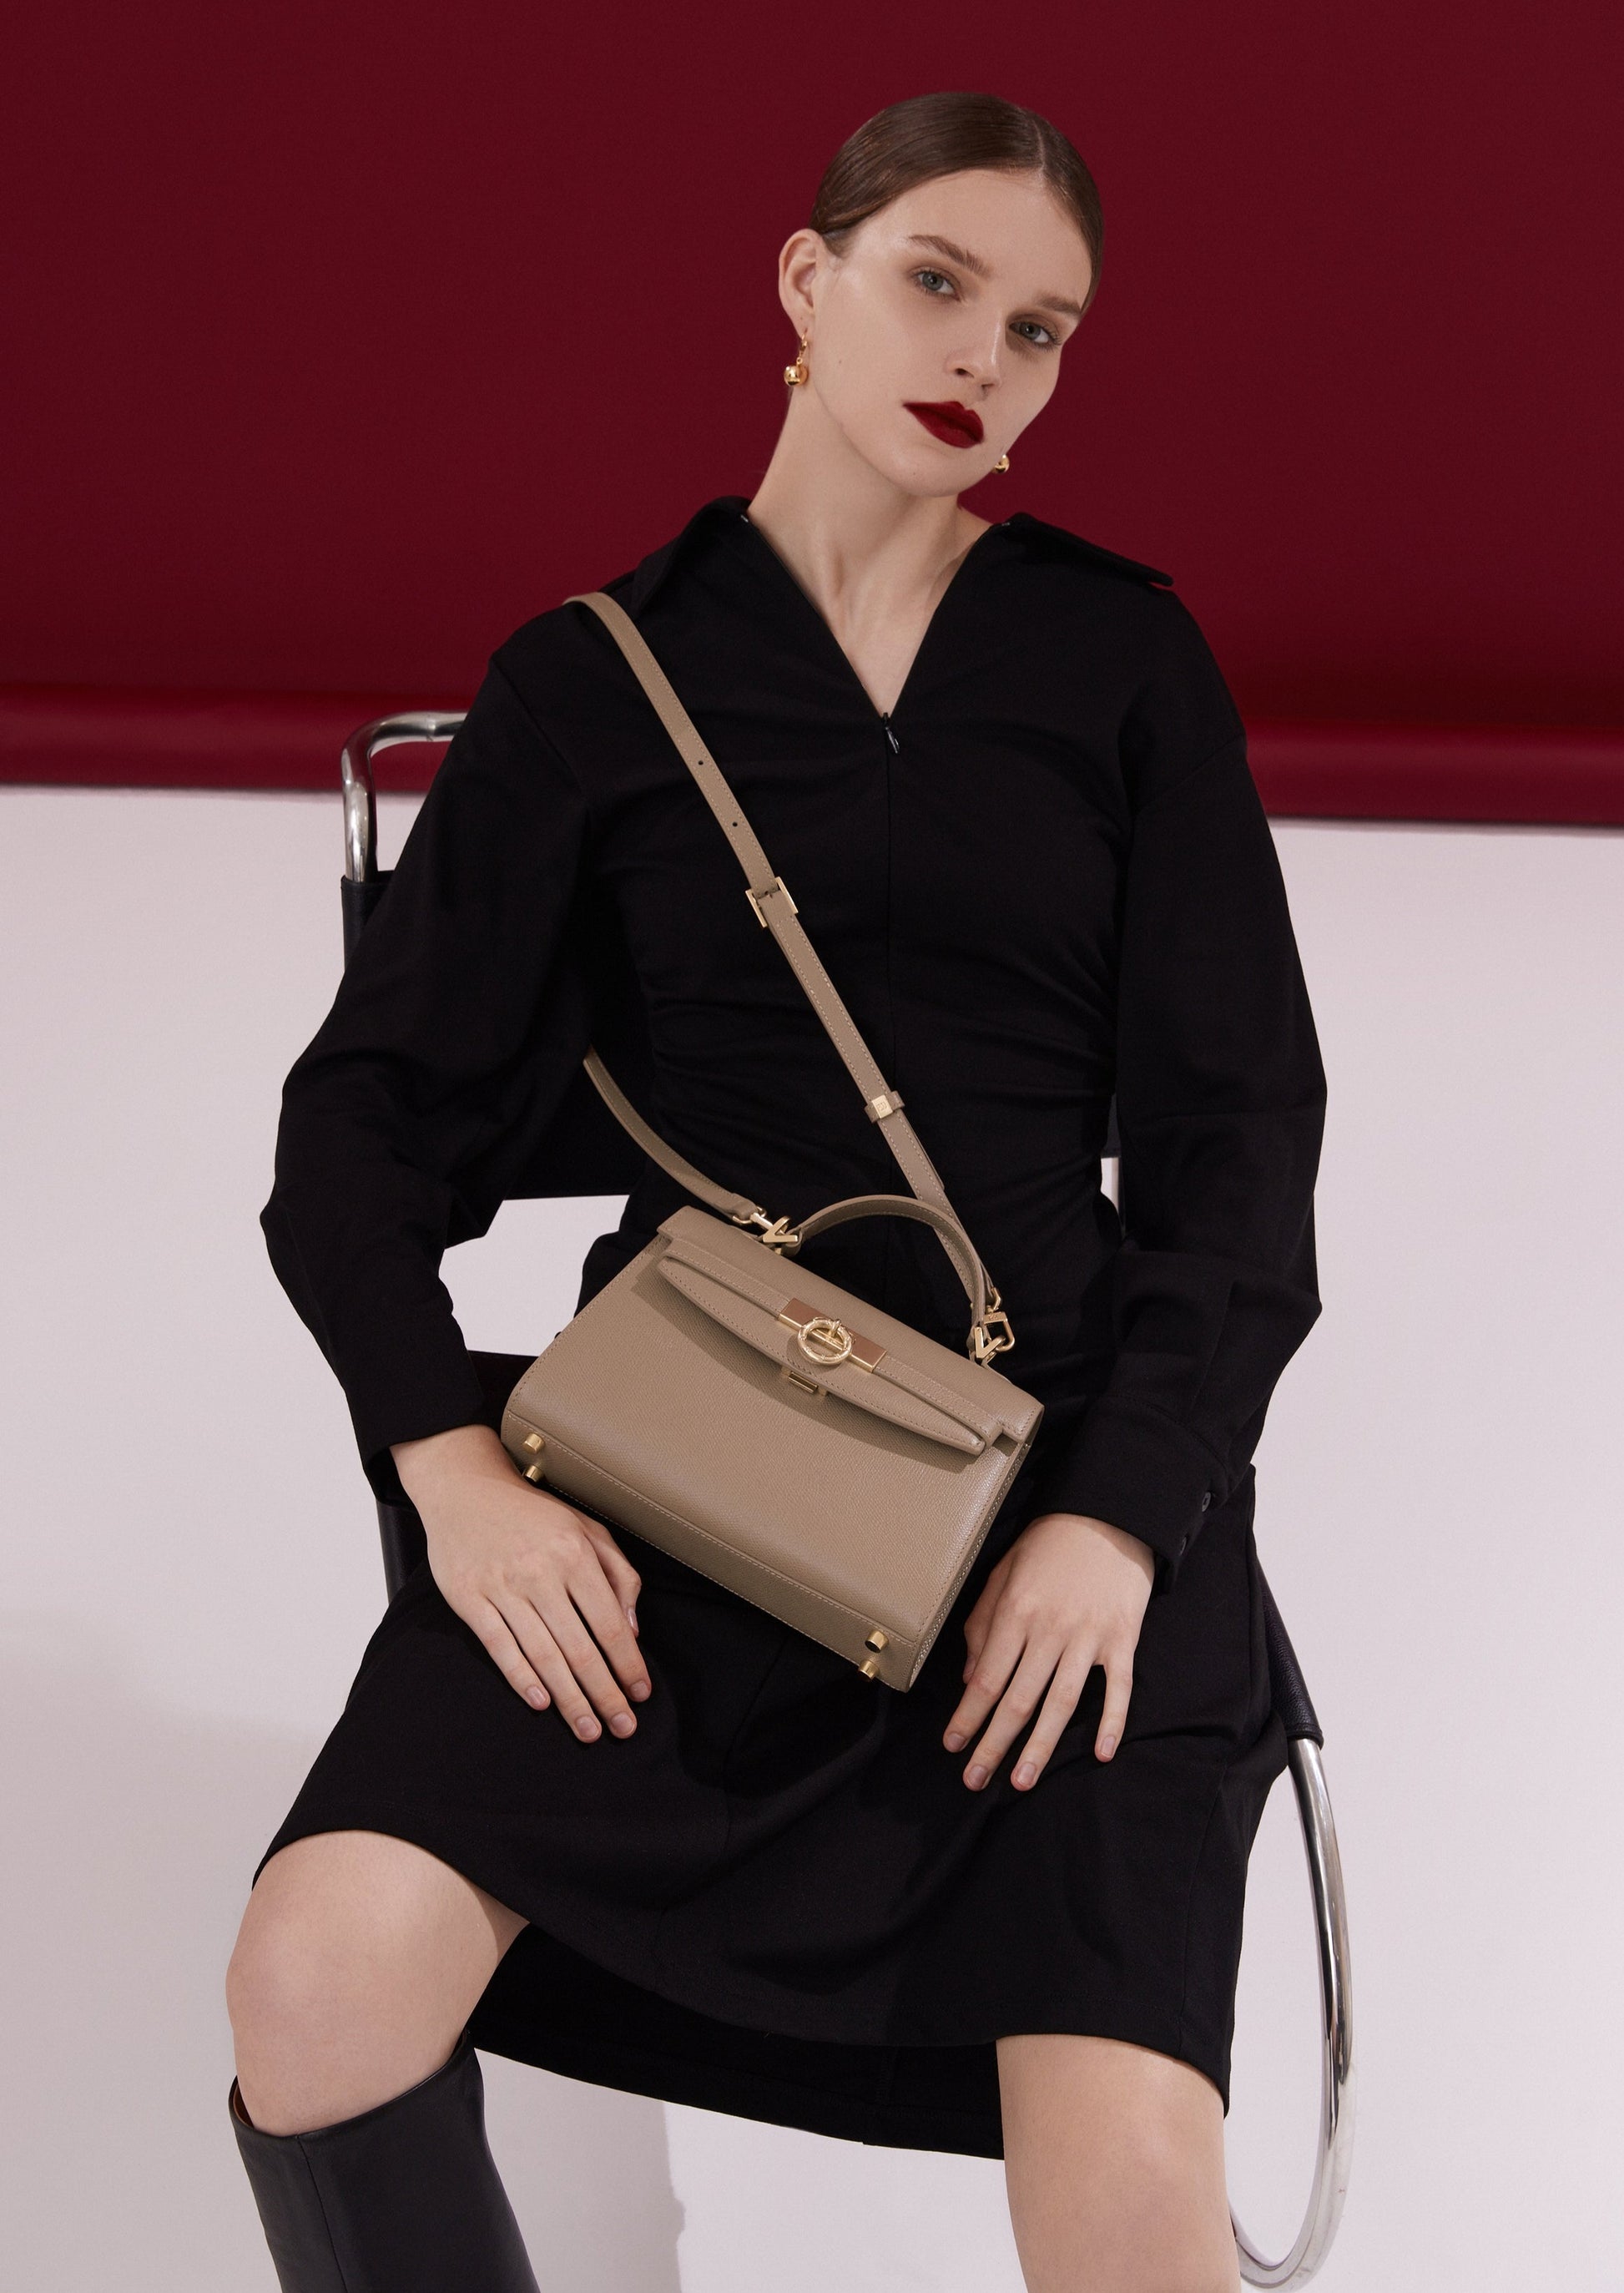 Clère Paris - The Parisian woman bag - Paradigme Mode